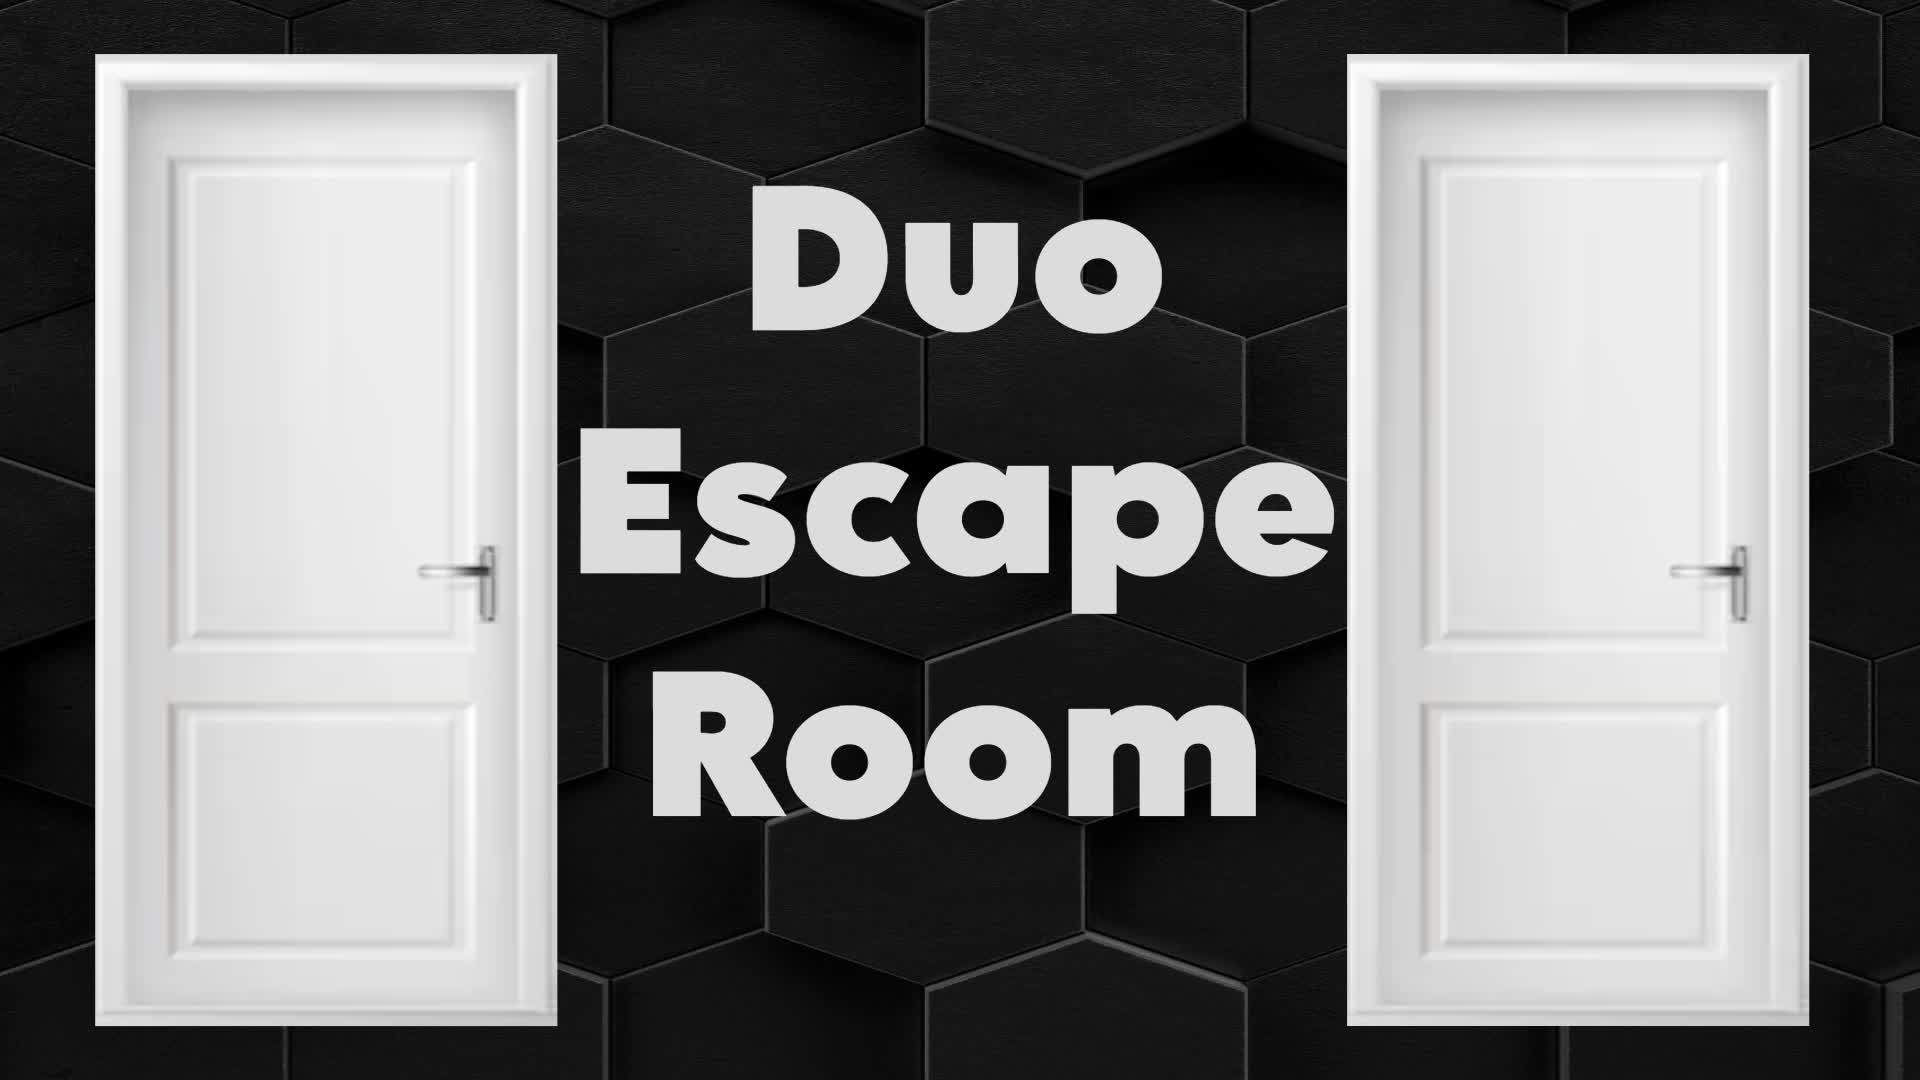 11 Level Duo Escape Room